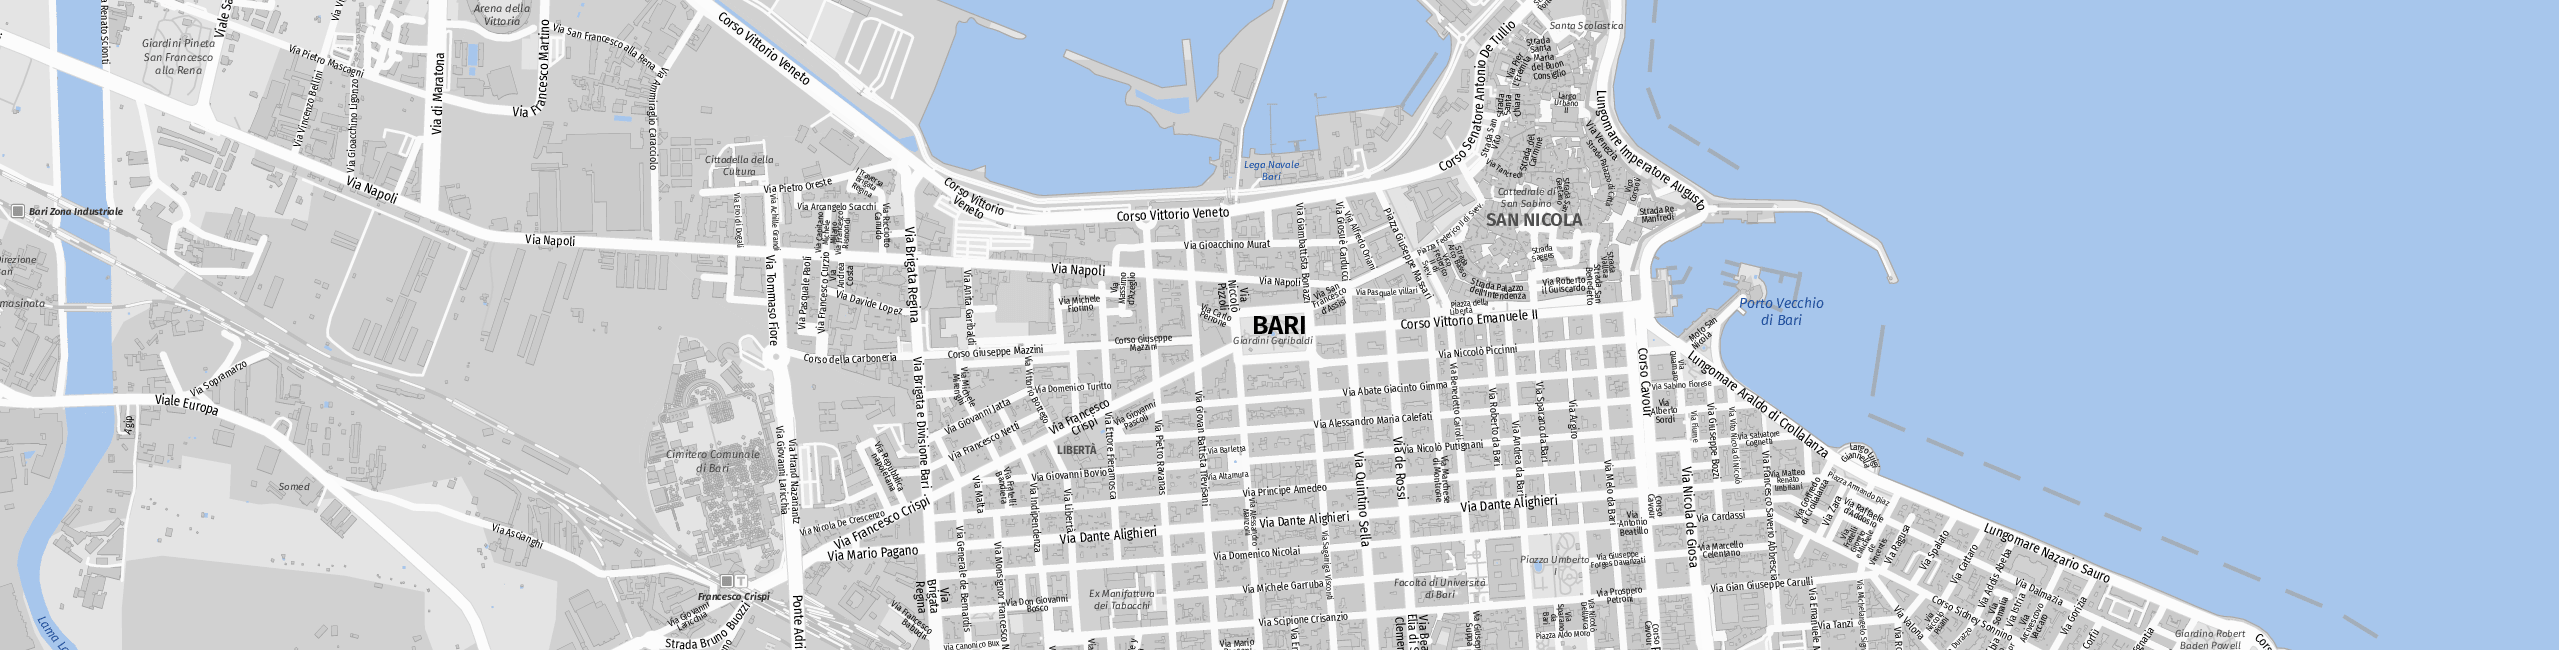 Stadtplan Bari zum Downloaden.